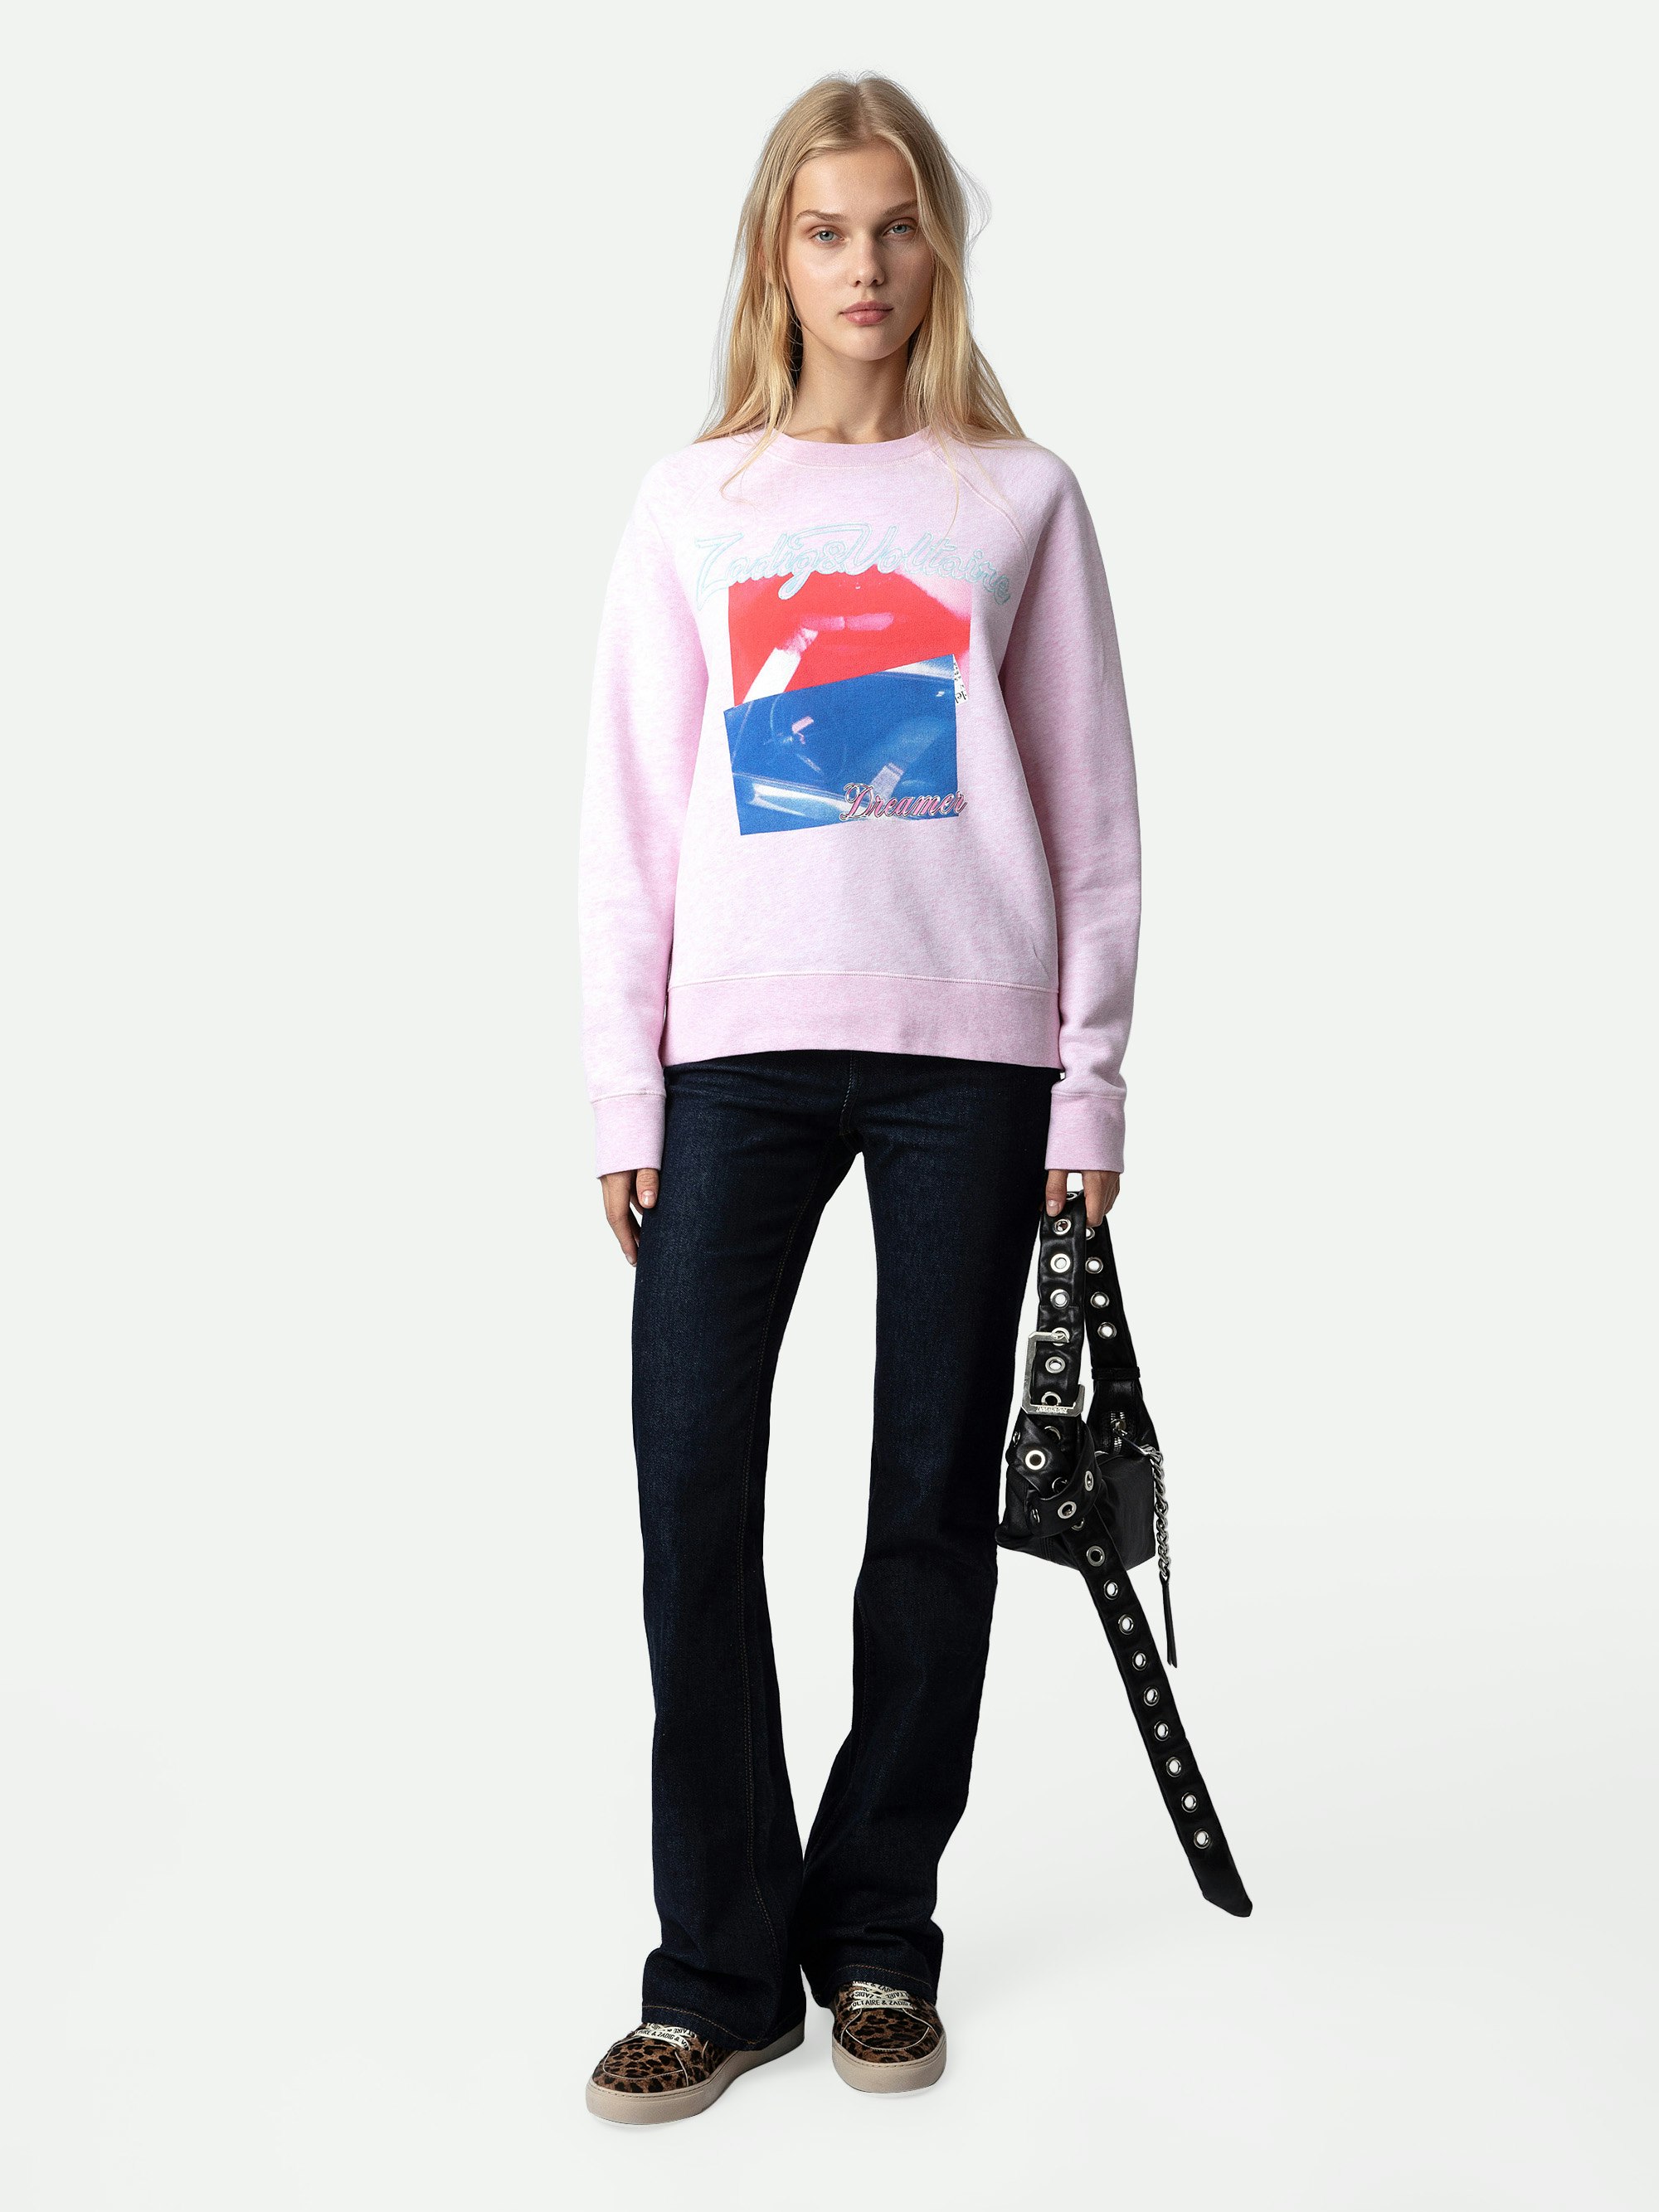 Sweatshirt Upper Fotoprint - Rosafarbenes Damen-Sweatshirt mit Fotoprint auf der Vorderseite.